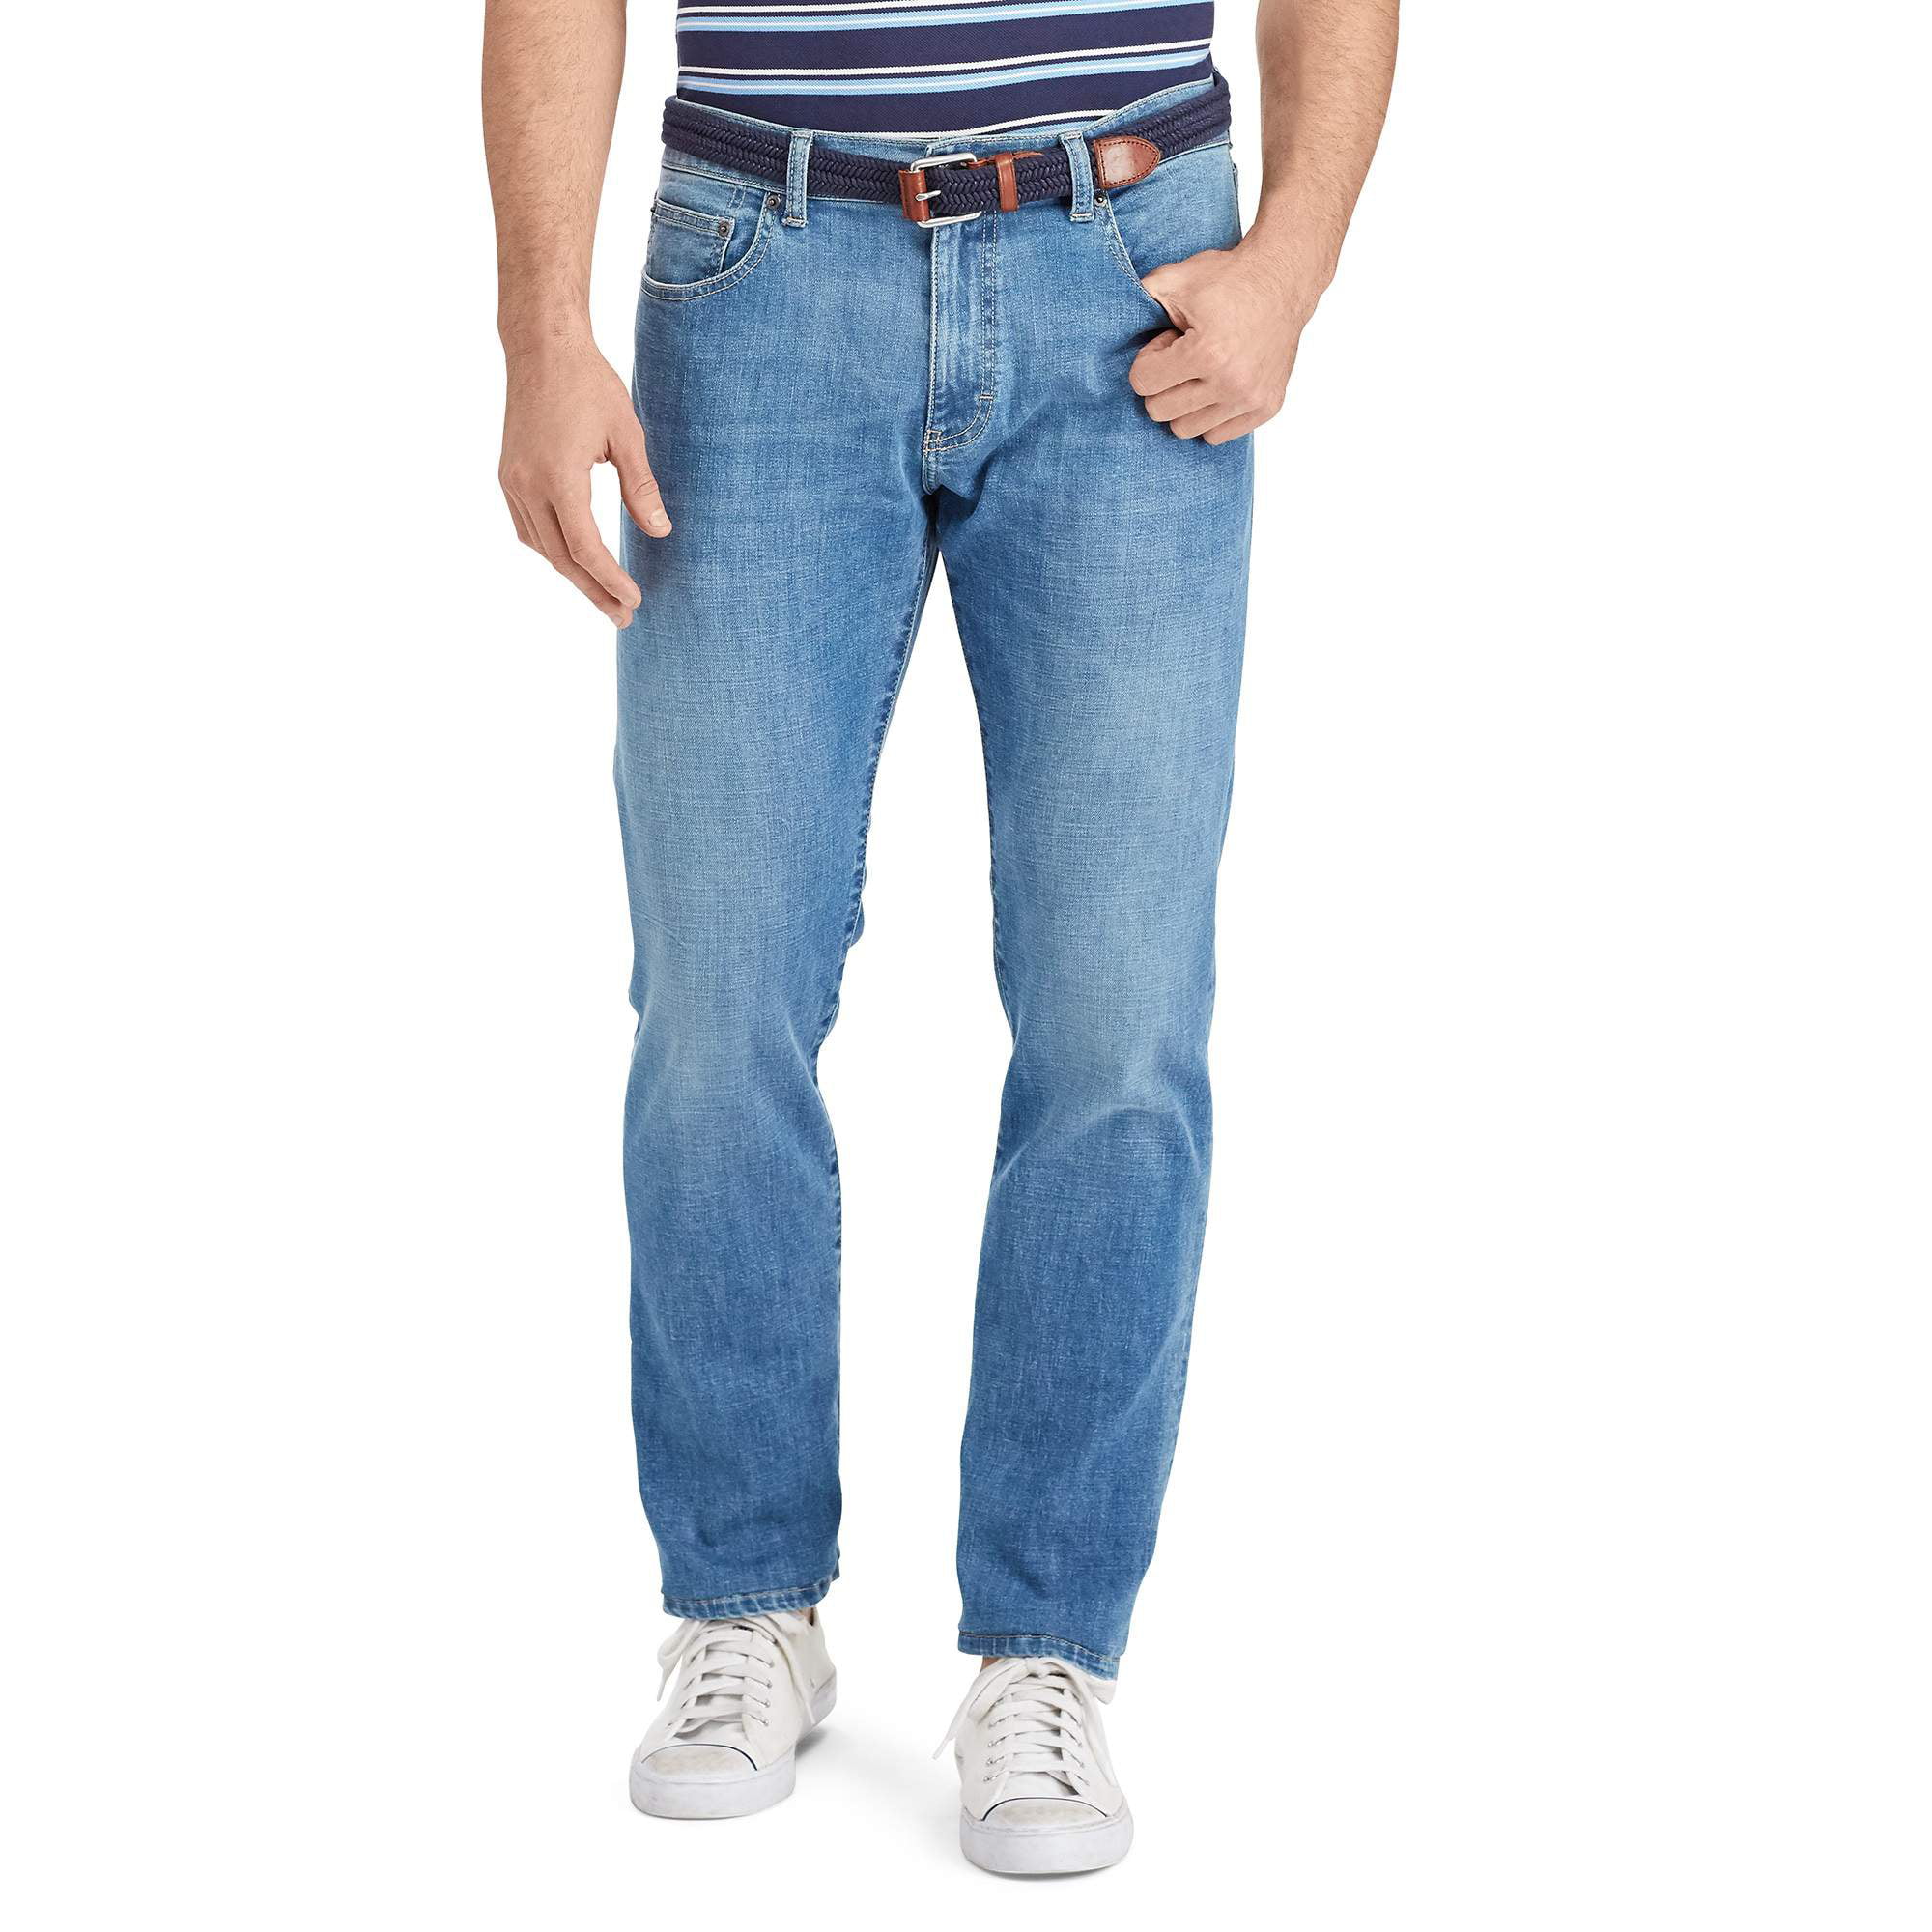 Chaps - Chaps Men's Straight Fit Jeans 